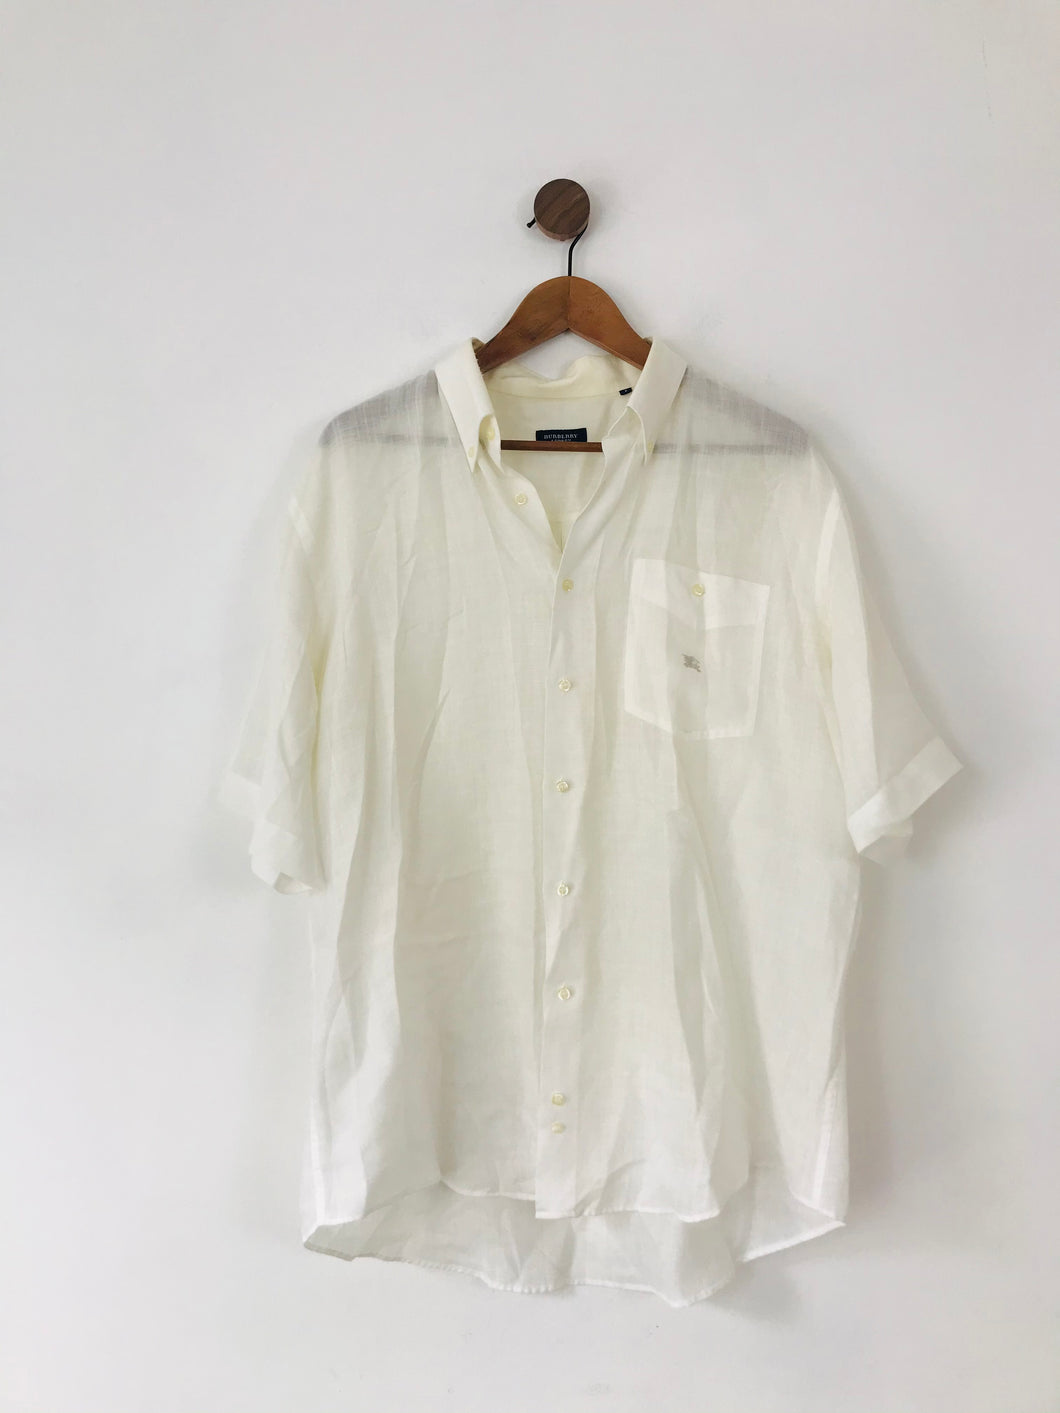 Burberry Men’s Lightweight Short Sleeve Collared Shirt | 5 XL | White